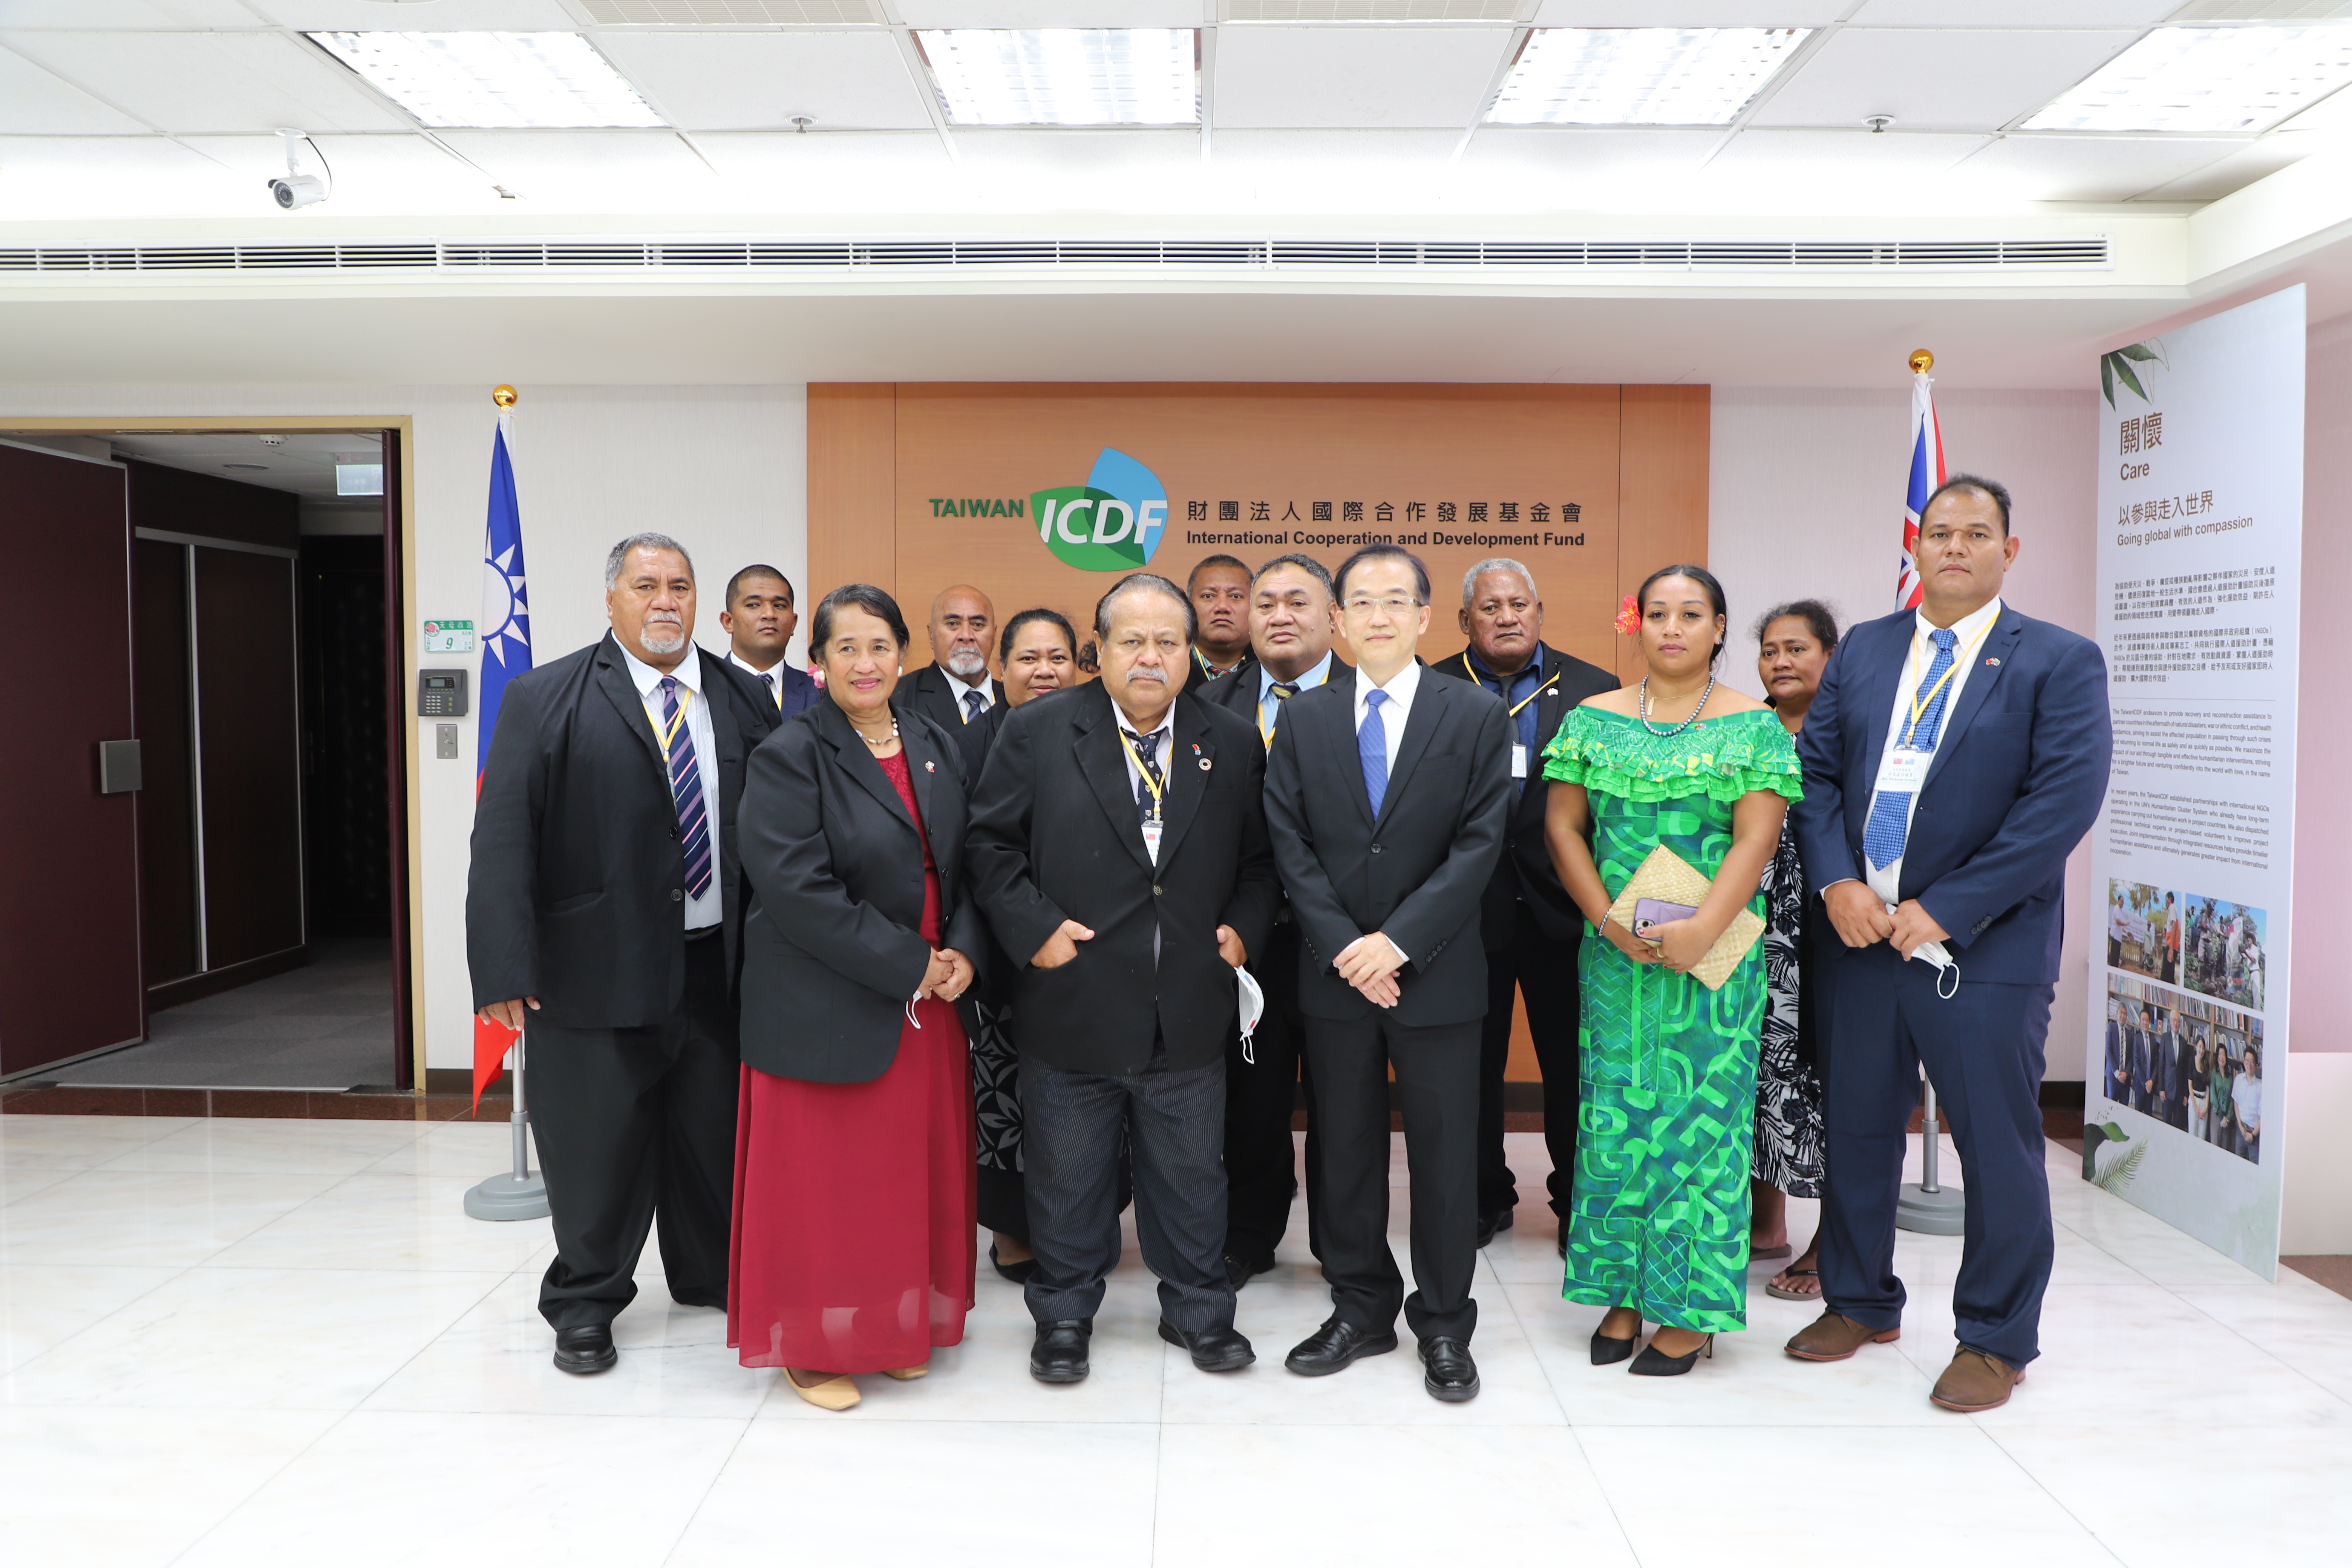 吐瓦魯國國會議長戴依歐伉儷訪問團拜會國合會